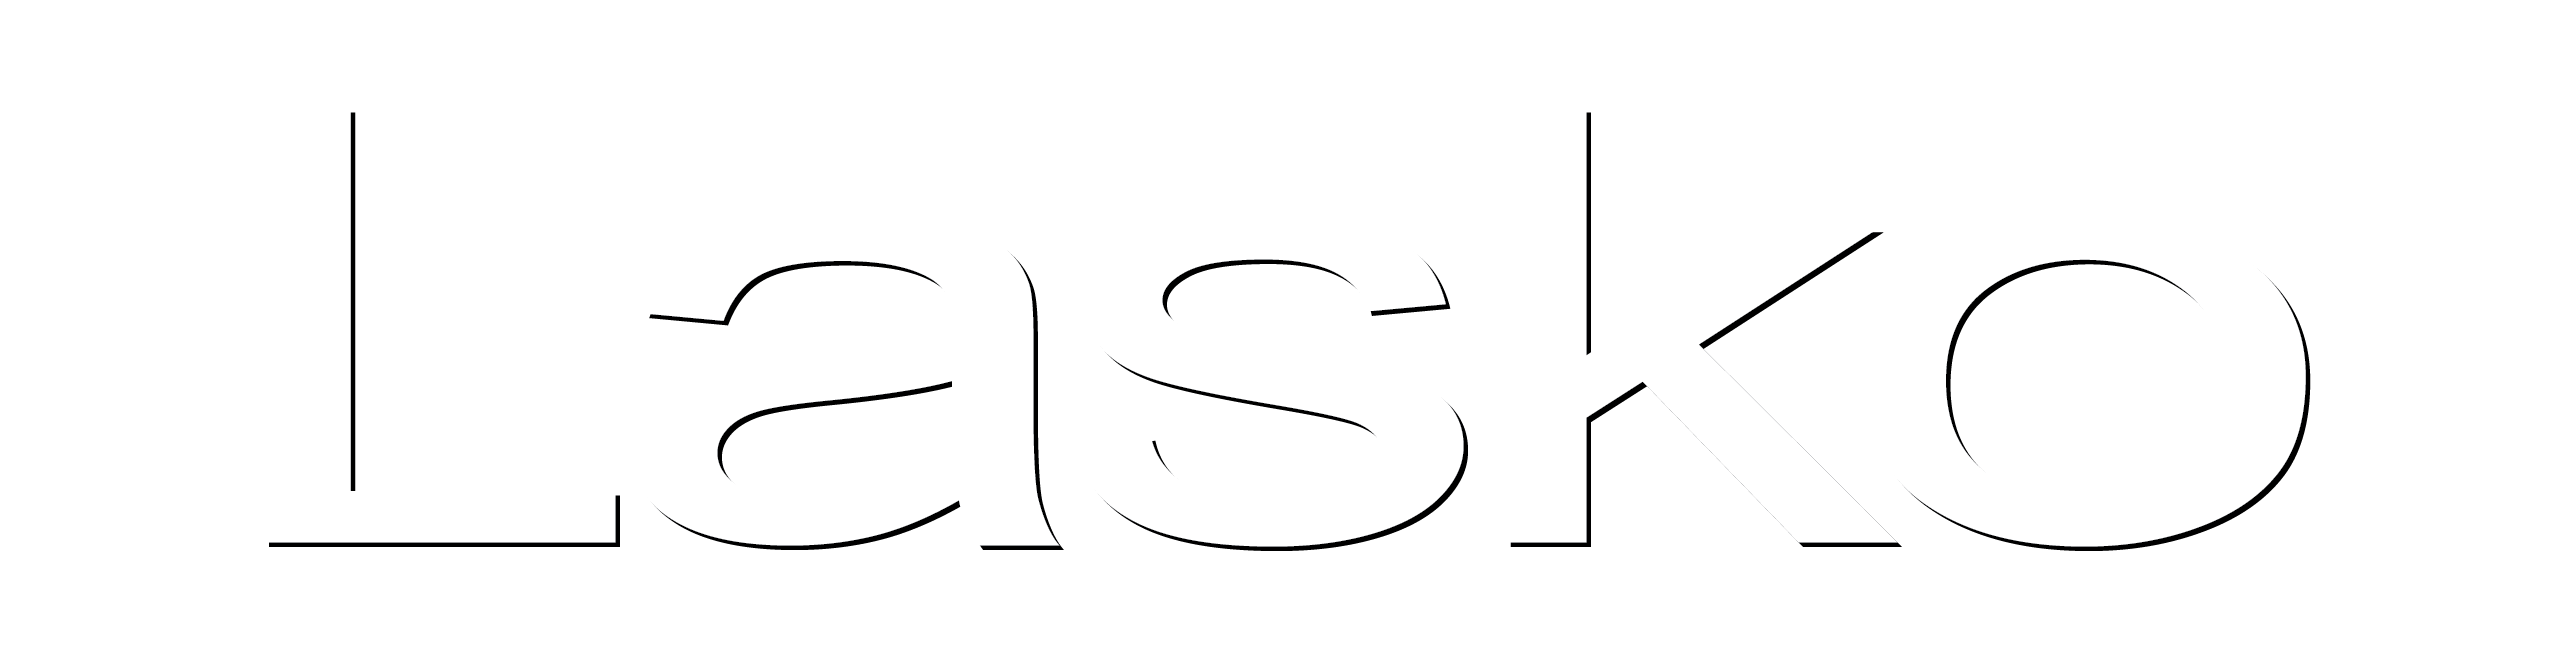 Lasko Logo - Enter the Lasko Products #MyLaskoContest